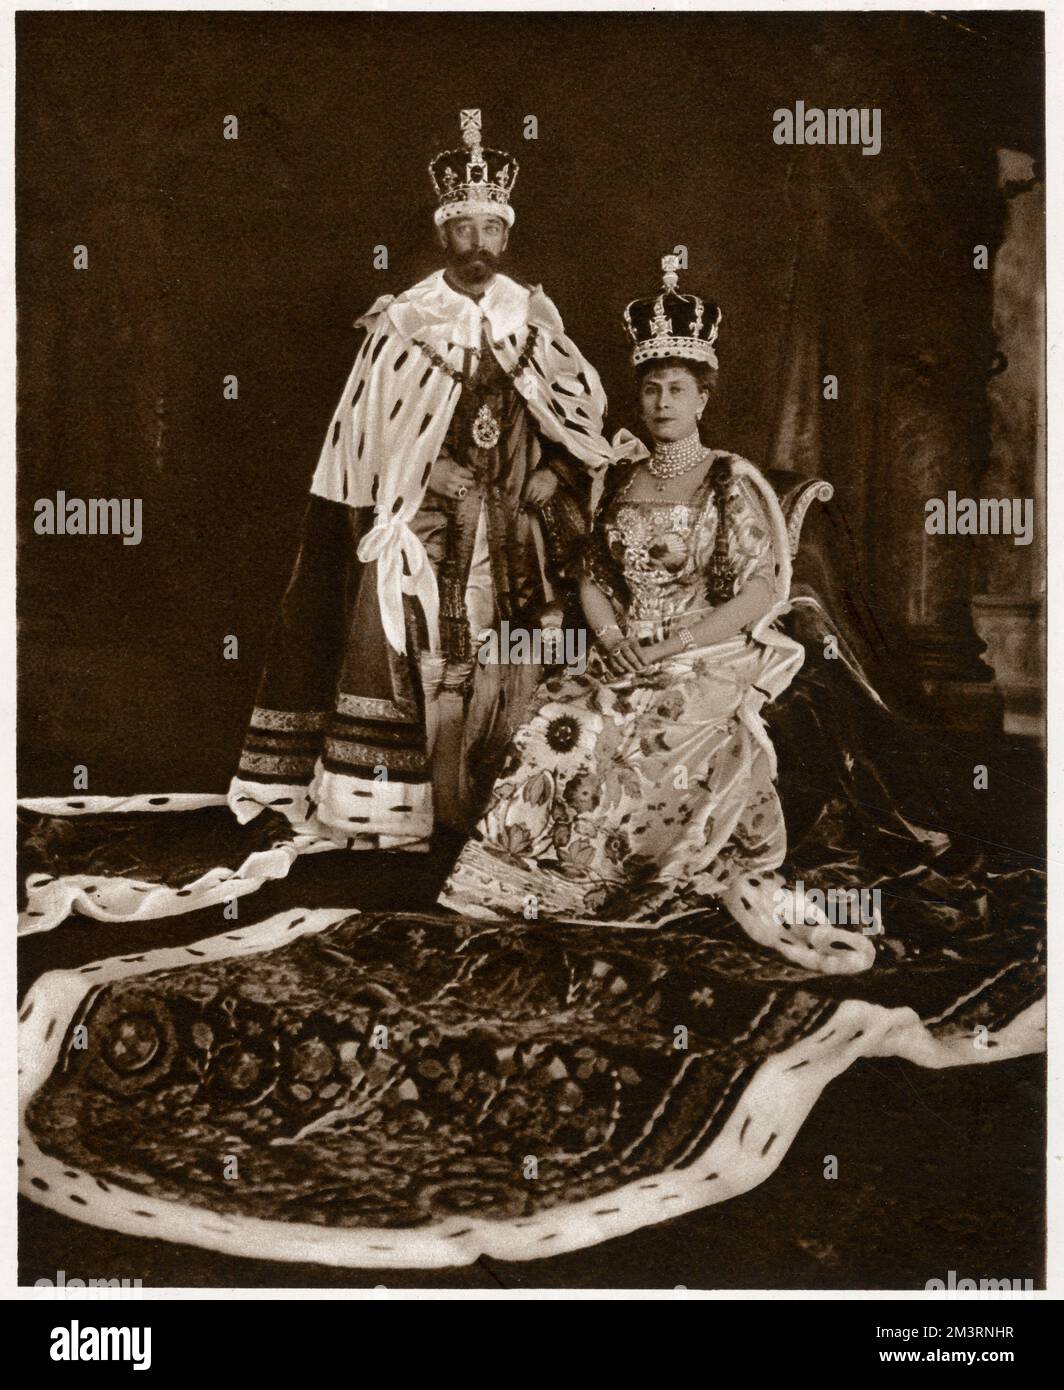 Incoronazione del re Giorgio V e della regina Maria consorte, Giorgio V che indossa la corona imperiale di stato, e Royal Purple Robe of state. Maria consorte indossando la corona di stato di Giorgio V, e l'abito per incoronazione ricamato allegoricamente. Data: 22 giugno 1911 Foto Stock